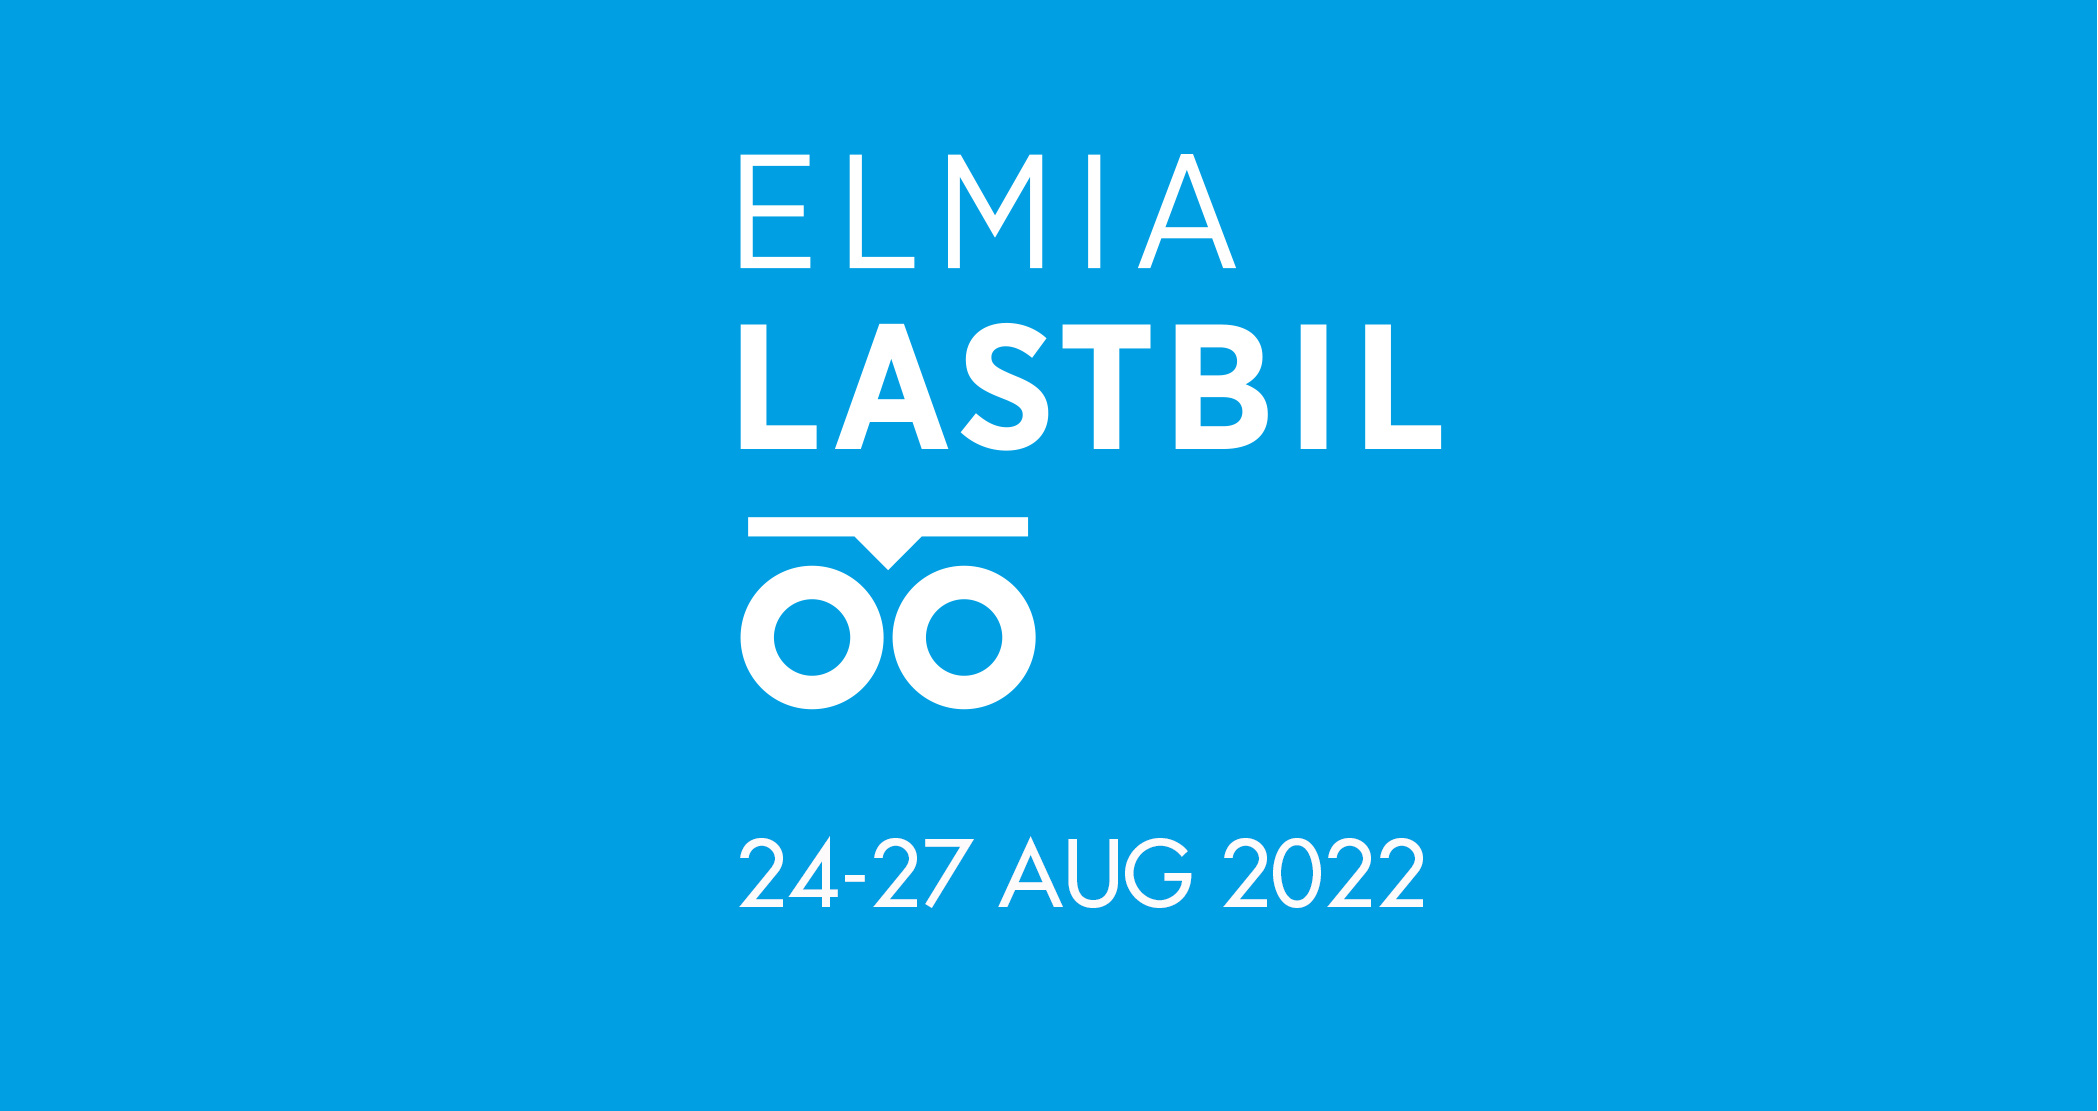 Elmia lastbil 2022